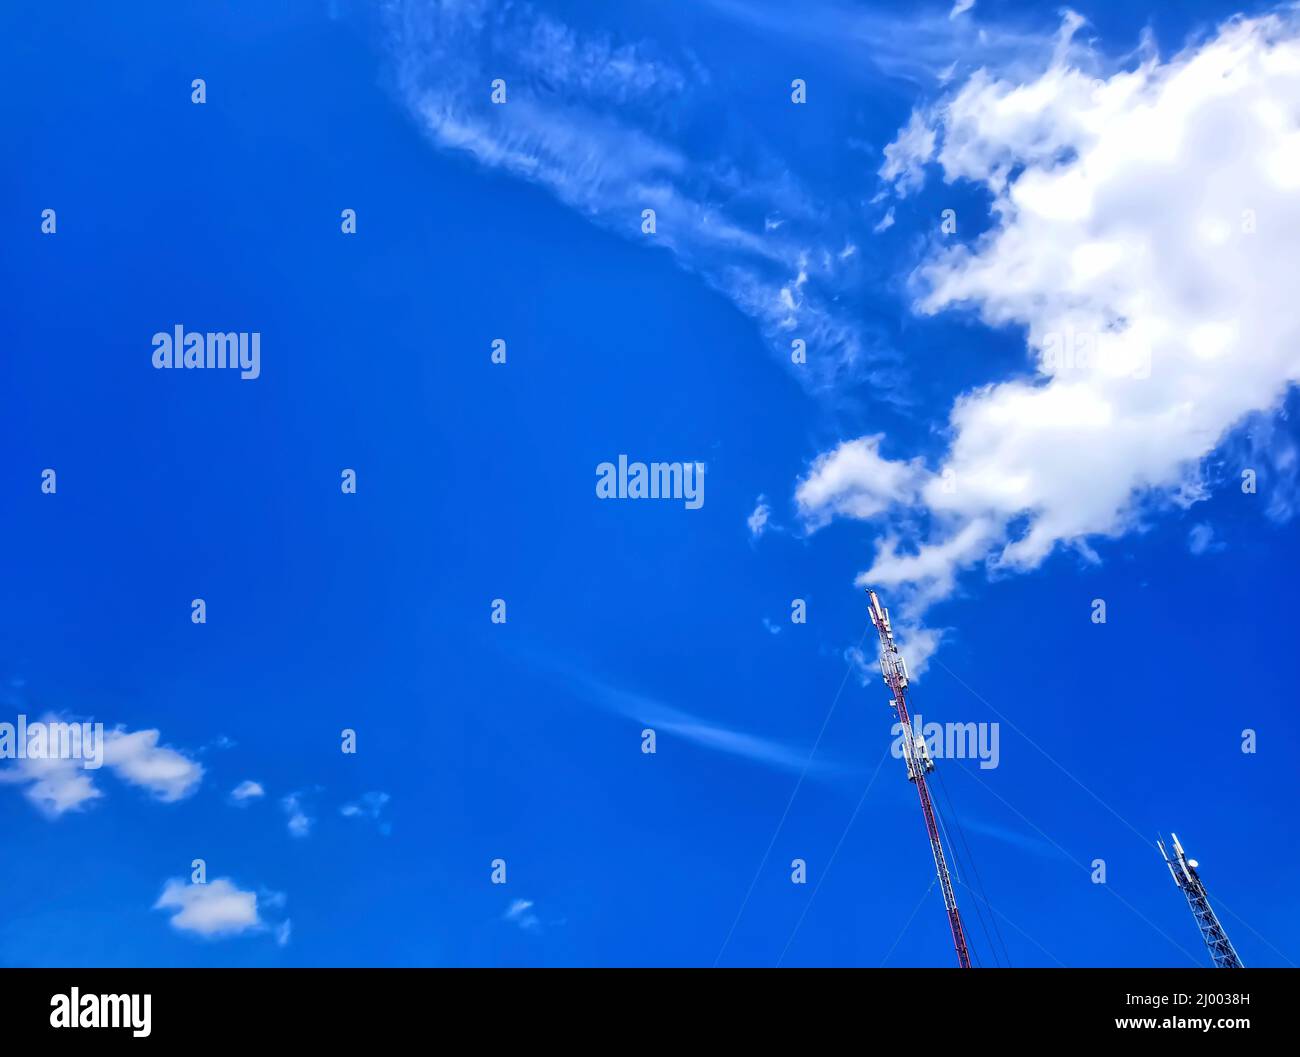 Zwei Antennen, Türme eines Mobilfunkanbieters gegen einen blauen Himmel. Blauer Himmel mit schönen weißen Wolken. Antennen für die mobile Kommunikation, für mobiles Phon Stockfoto